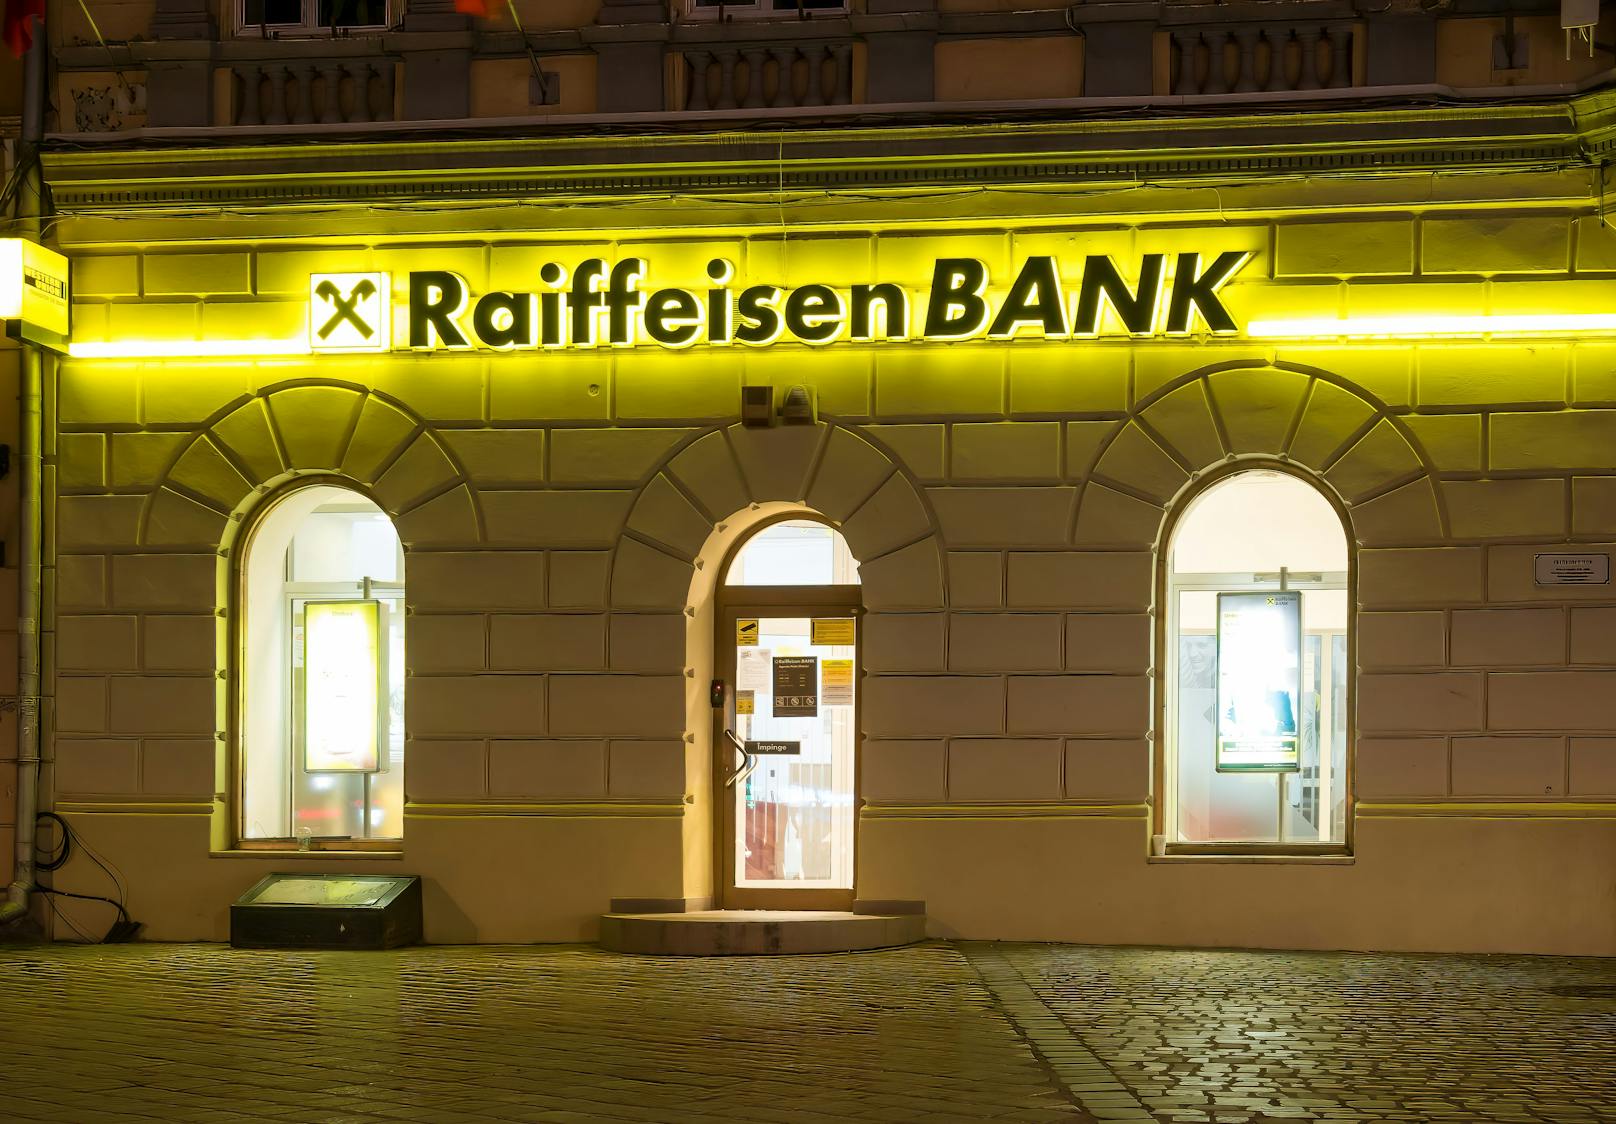 Am Sonntag kam es zu massiven Störungen bei der Raiffeisen-Bank.